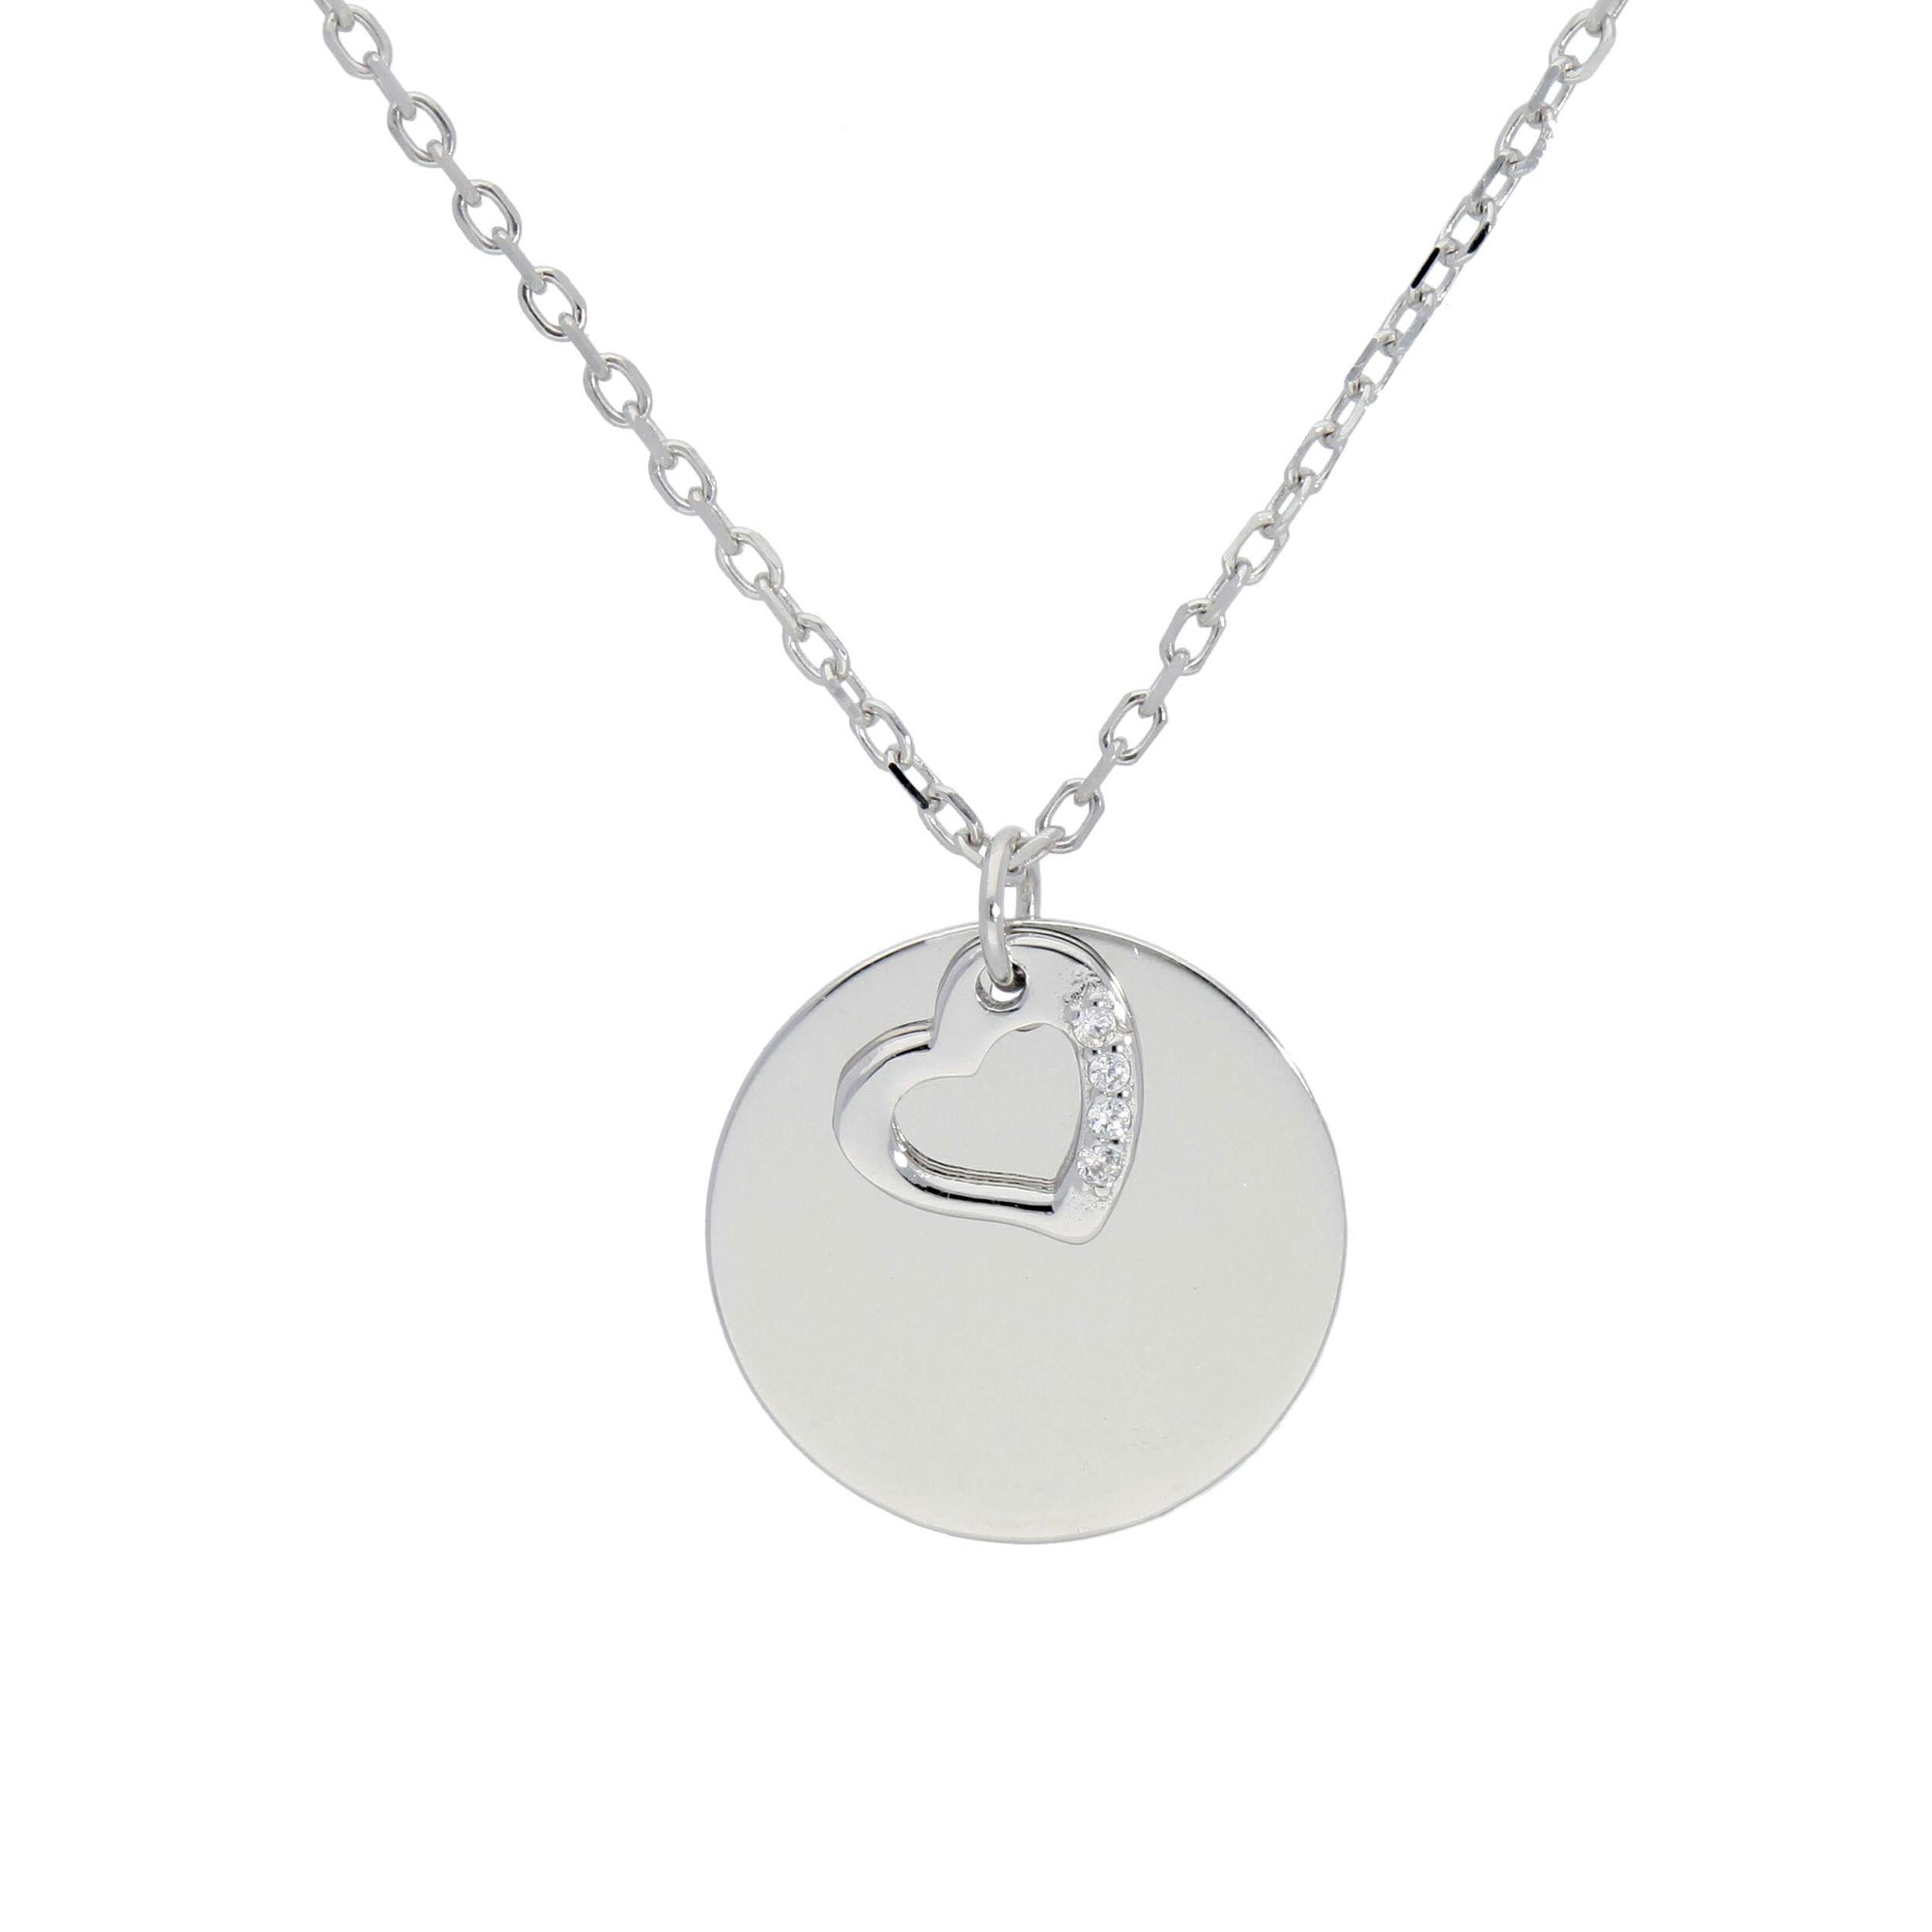 Engravable Coin Necklaces - penelope-it.com